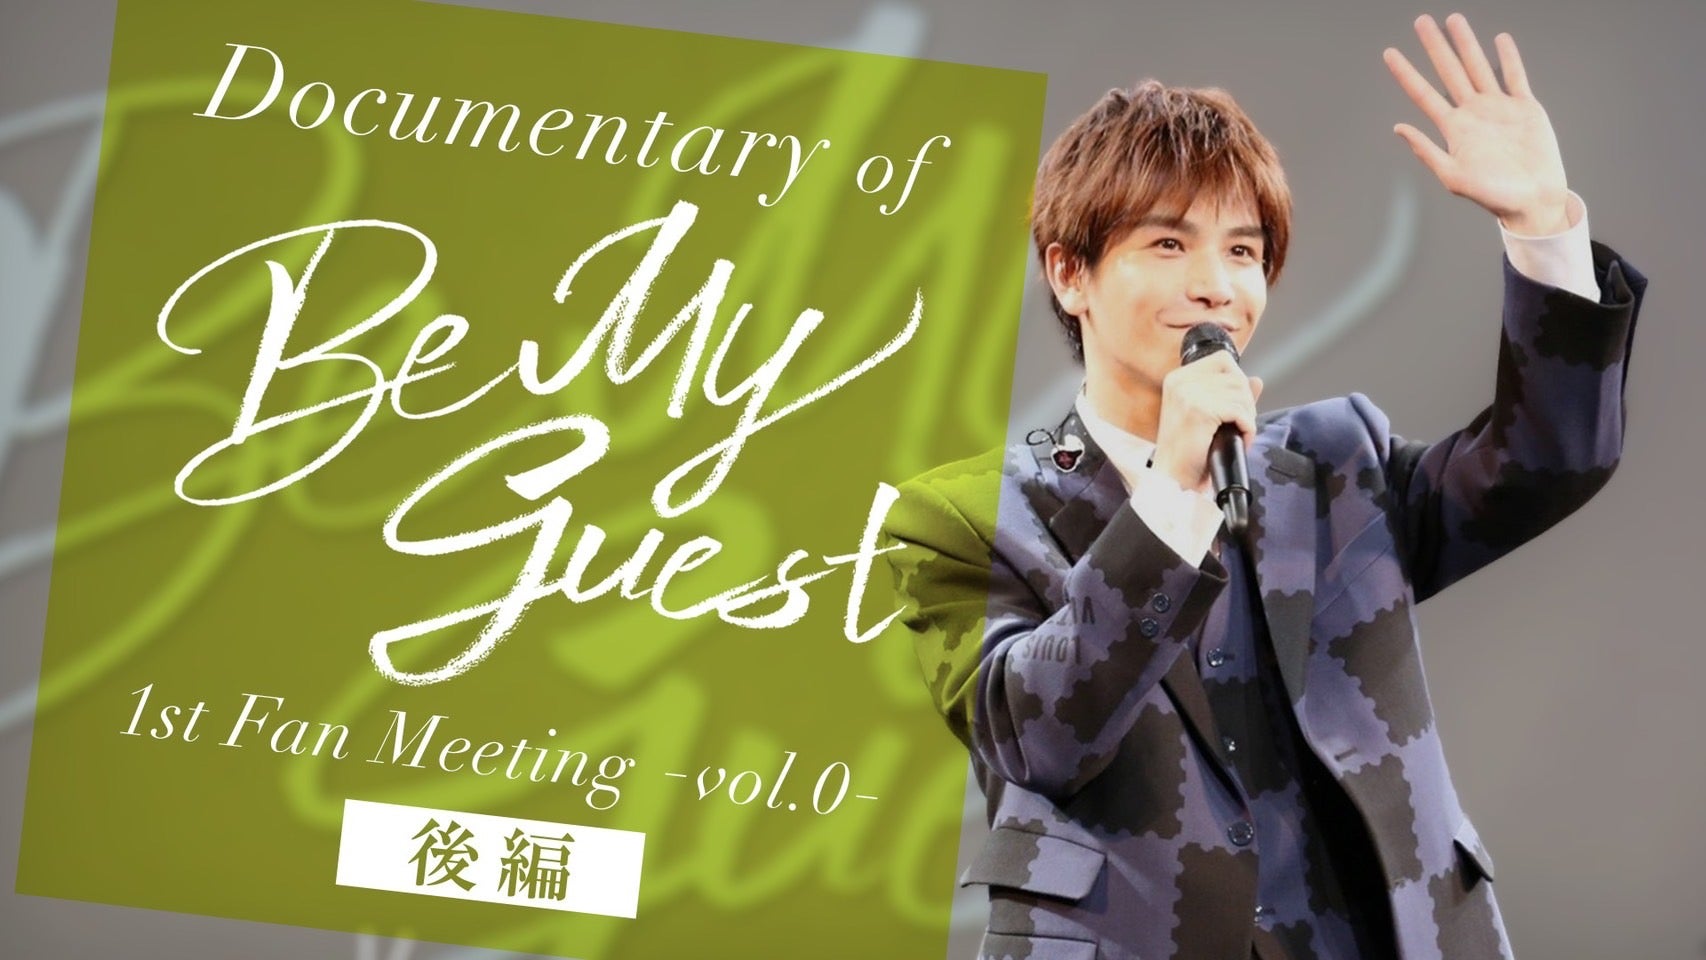 岩田剛典「Documentary of Be My guest 〜1st Fan Meeting Vol.0〜」後編 2022/9/20(火)